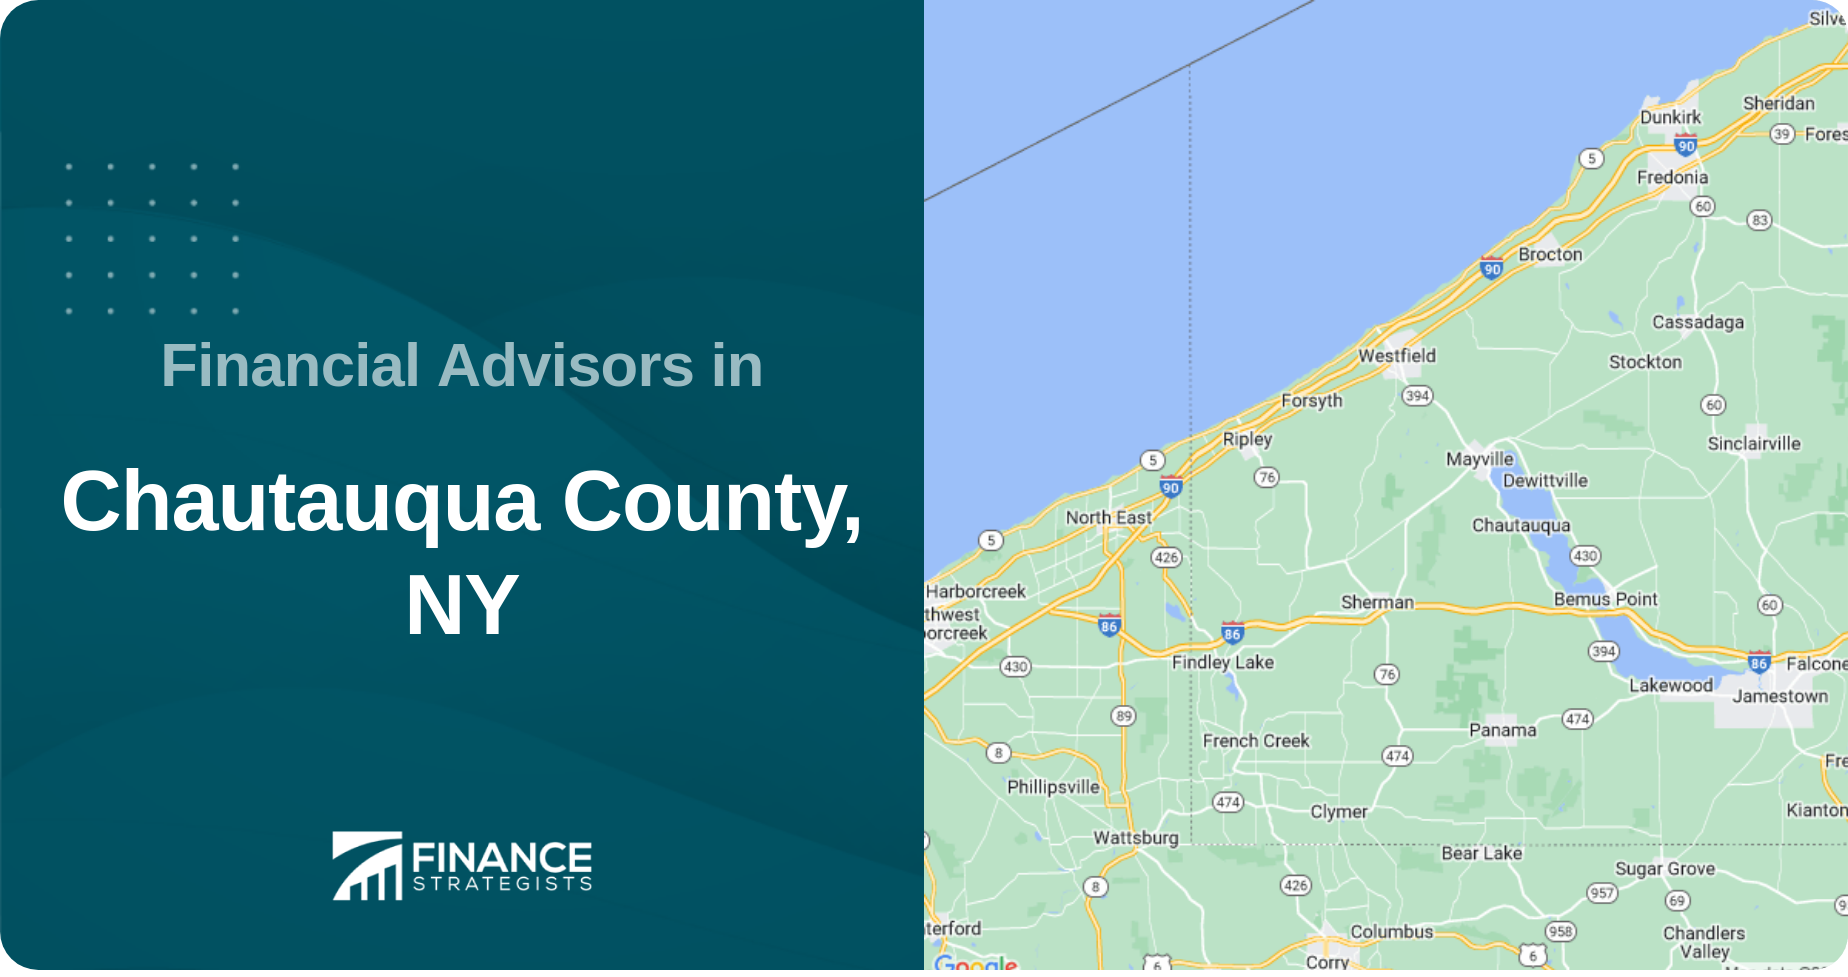 Financial Advisors in Chautauqua County, NY